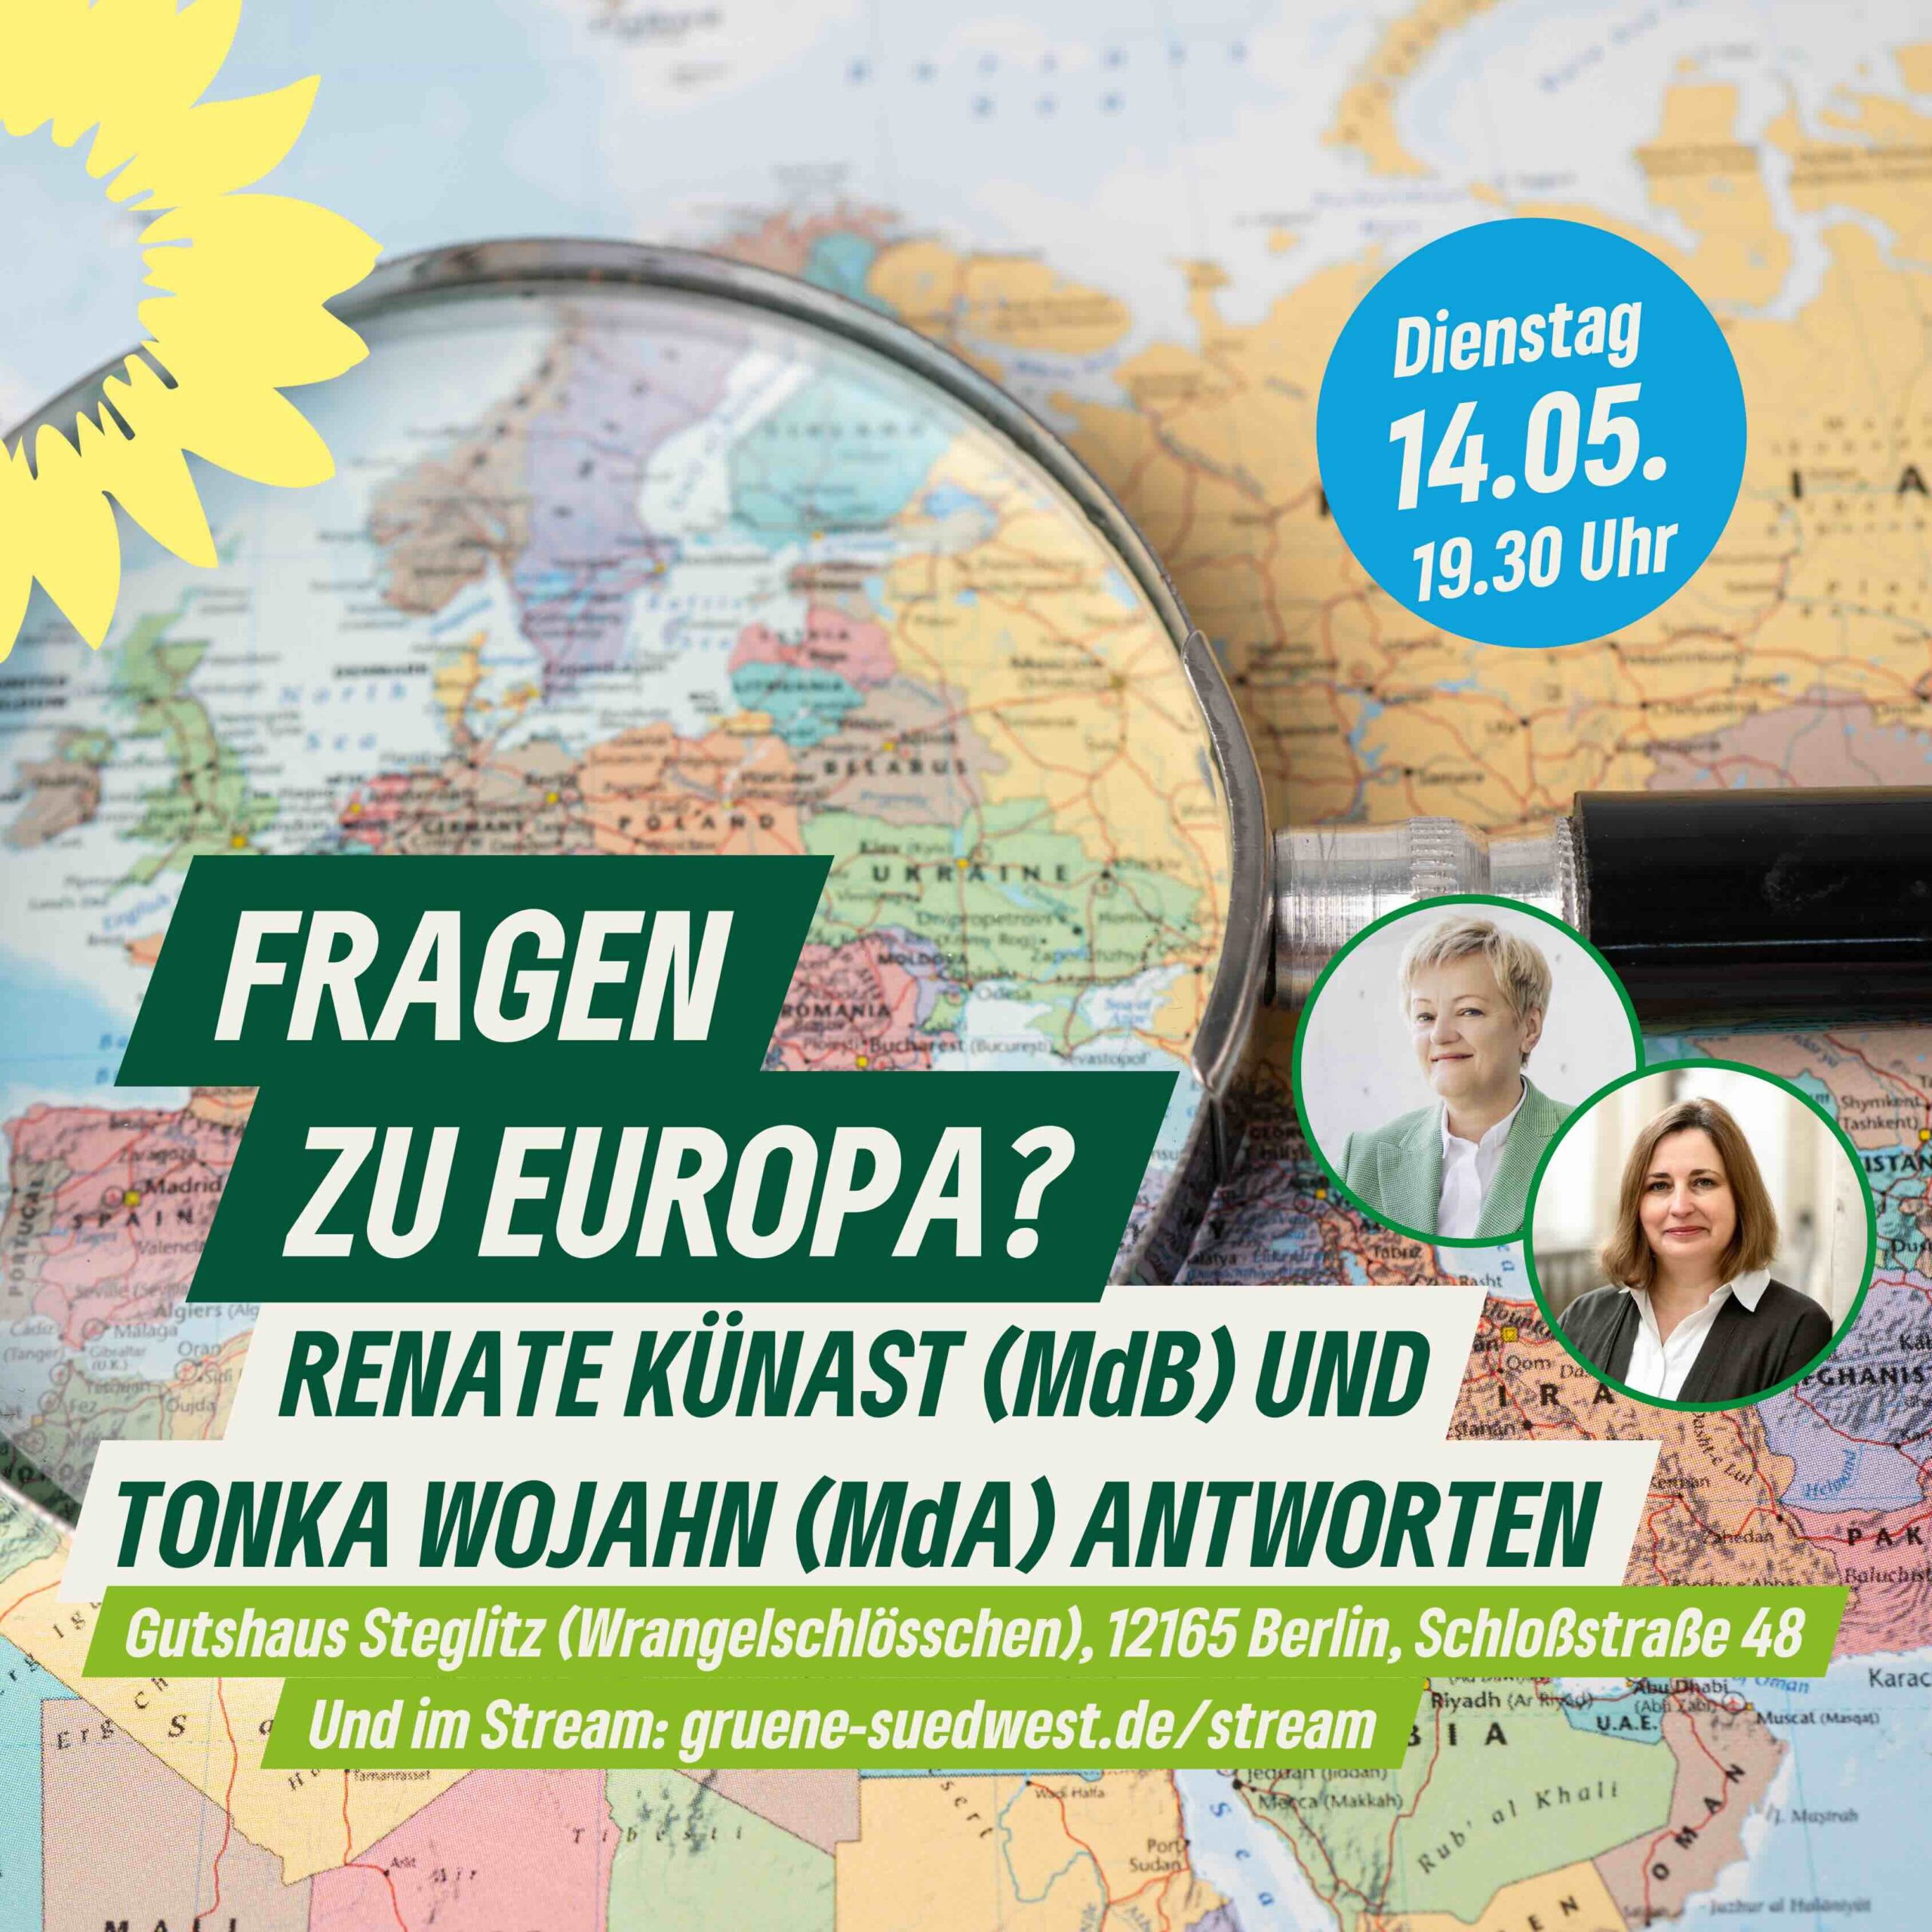 Fragen zu Europa? Renate und Tonka antworten am 14. Mai